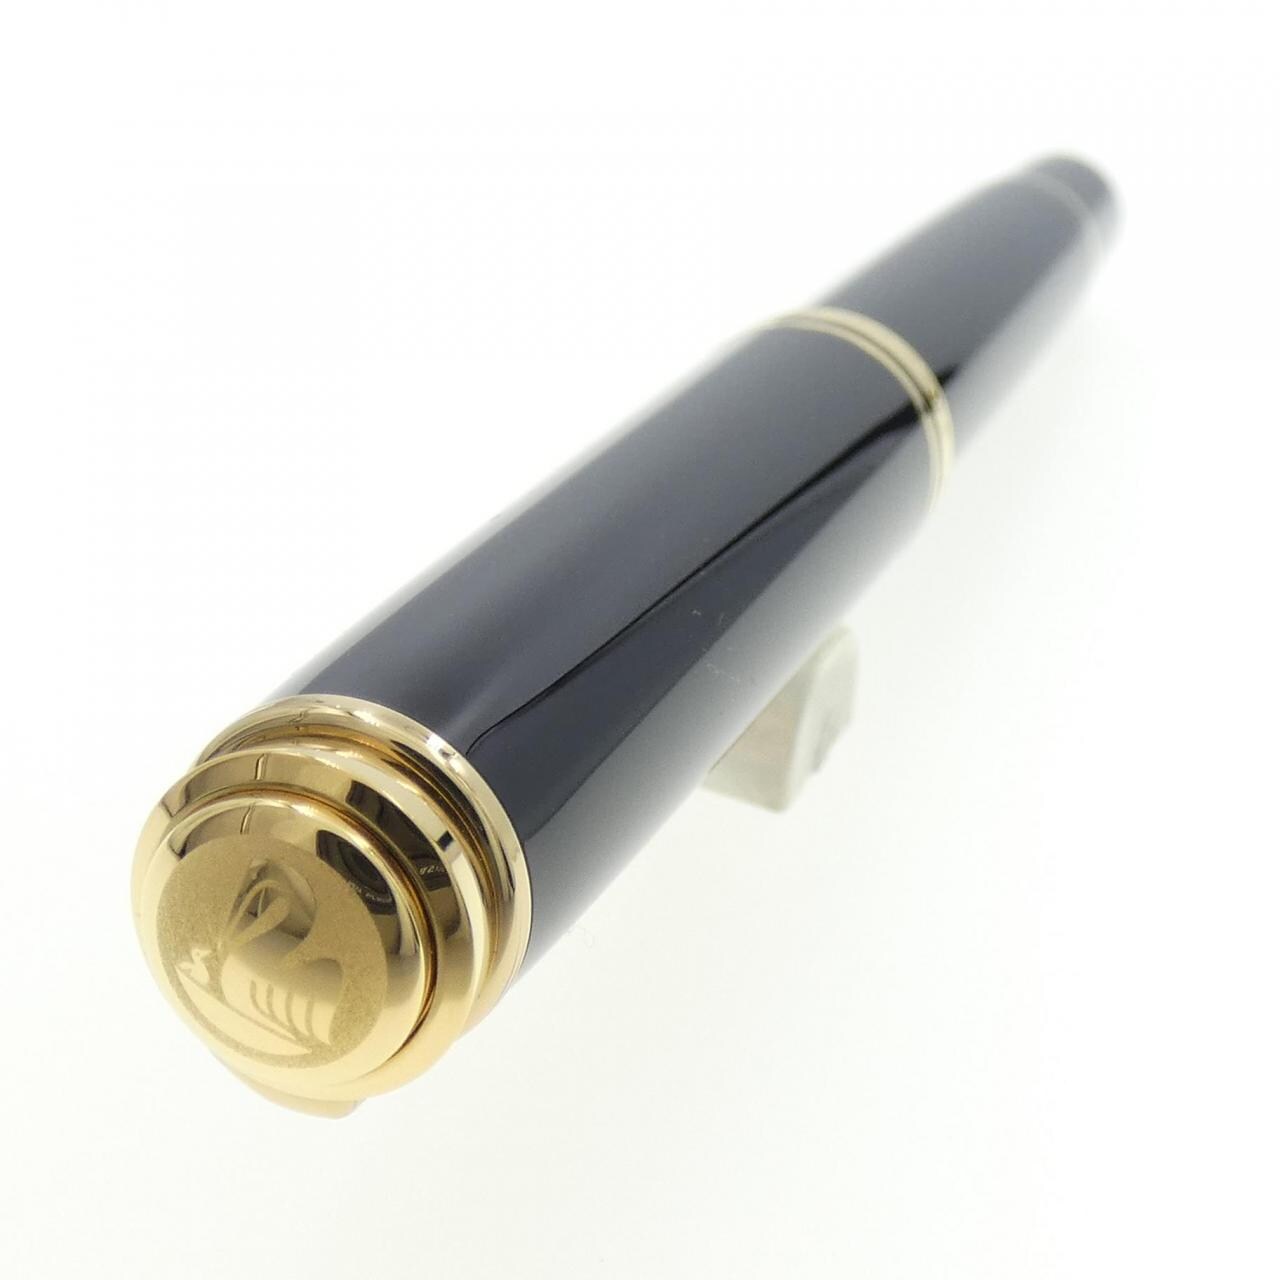 橄榄石M800黑色钢笔